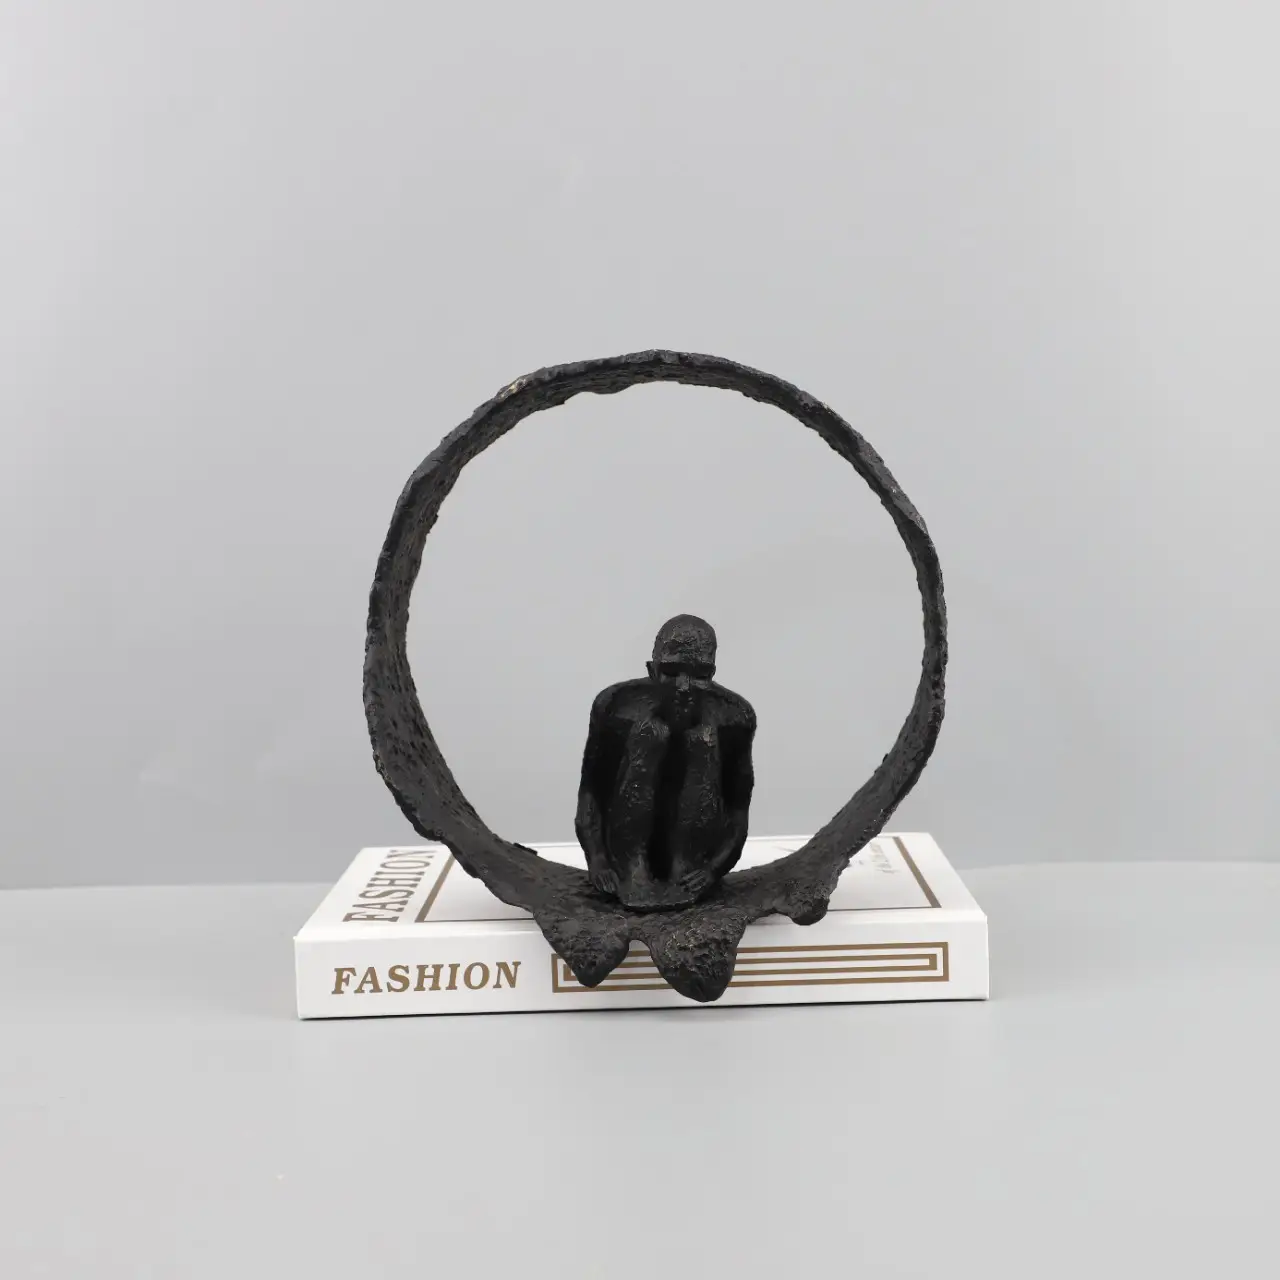 تمثال داخلي تجريدي أسود لفن الإنسان تمثال من الحديد المطاوع ديكور منزلي داخلي طاولة مشغولات معدنية